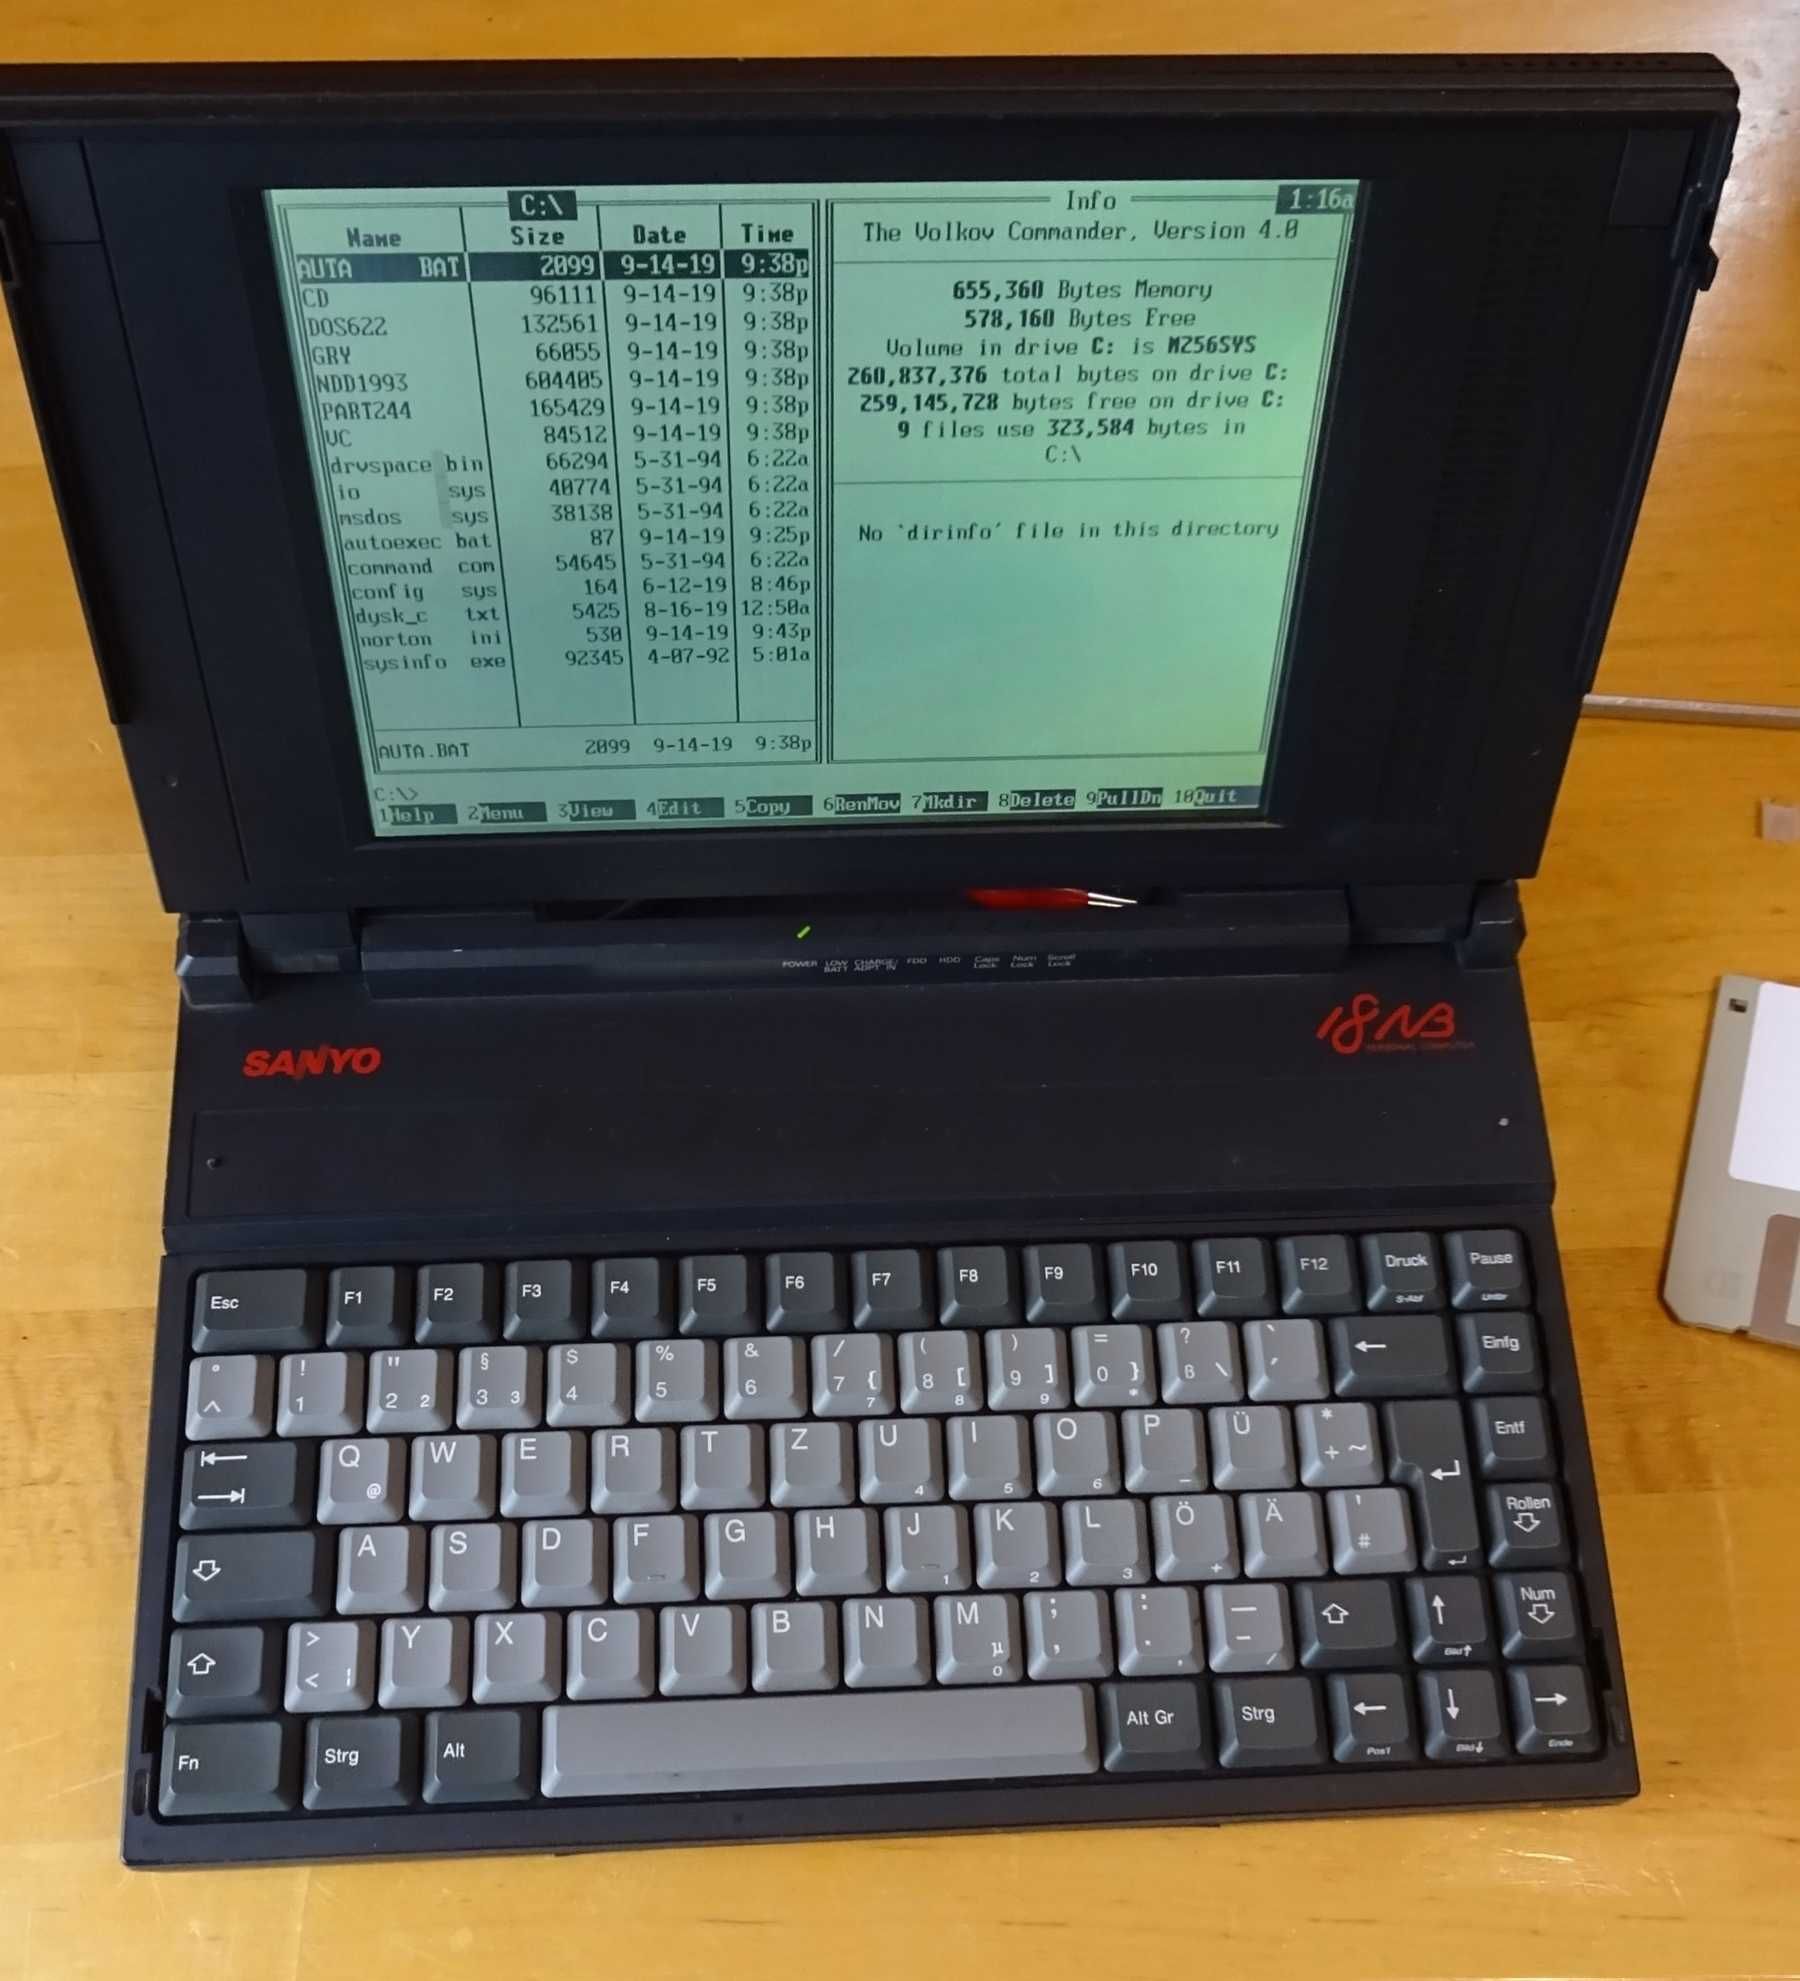 Laptop de colectie - Sanyo MBC-18nl8 - 1991 - functional perfect